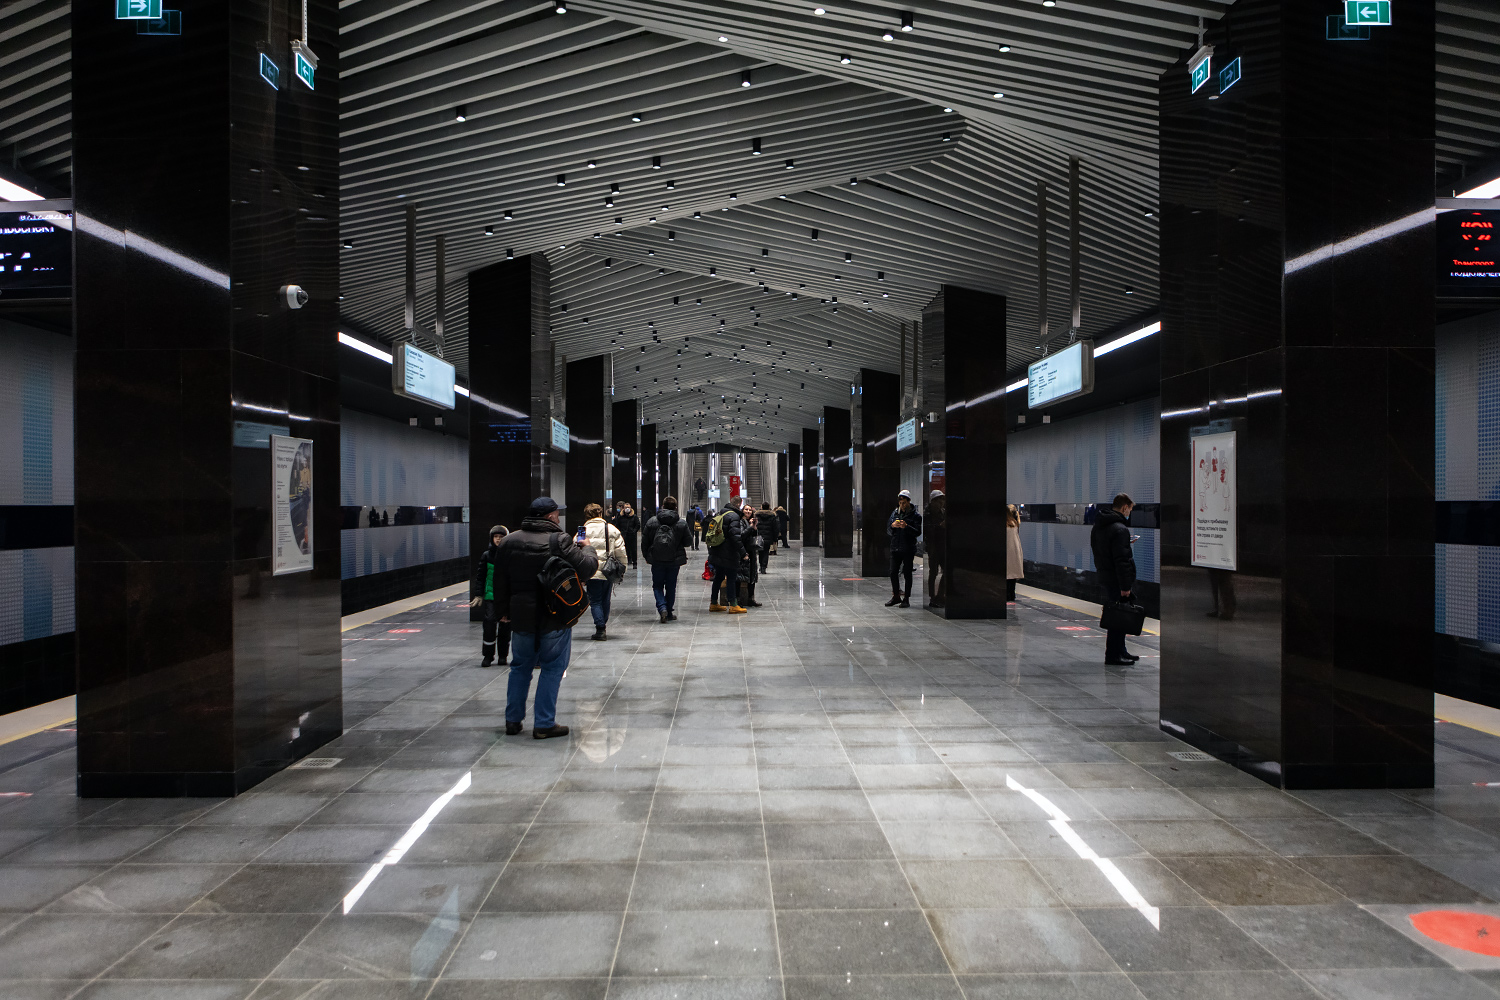 Moszkva — Metropolitain — [11] Bol'shaya Koltsevaya Line; Moszkva — Opening of stations on the Bolshaya Koltsevaya line on the Mnyovniki — Kakhovskaya section on 07/12/2021